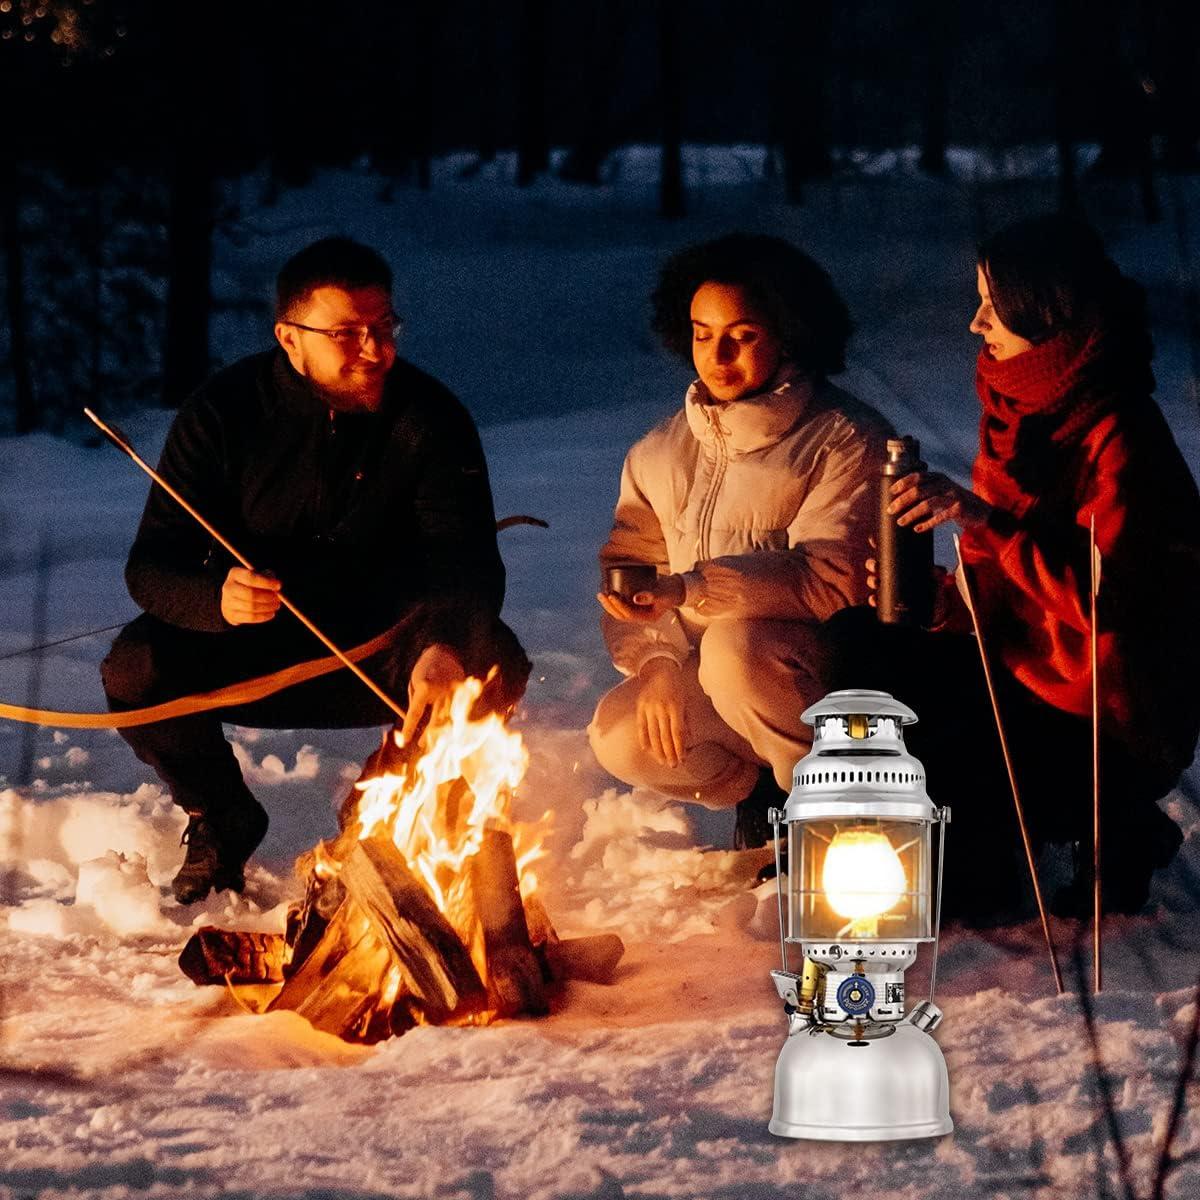 20Pcs Propane Lantern Mantles for Gas Lantern Propane Light Mantle for  Outdoor Camping Lantern Natural 